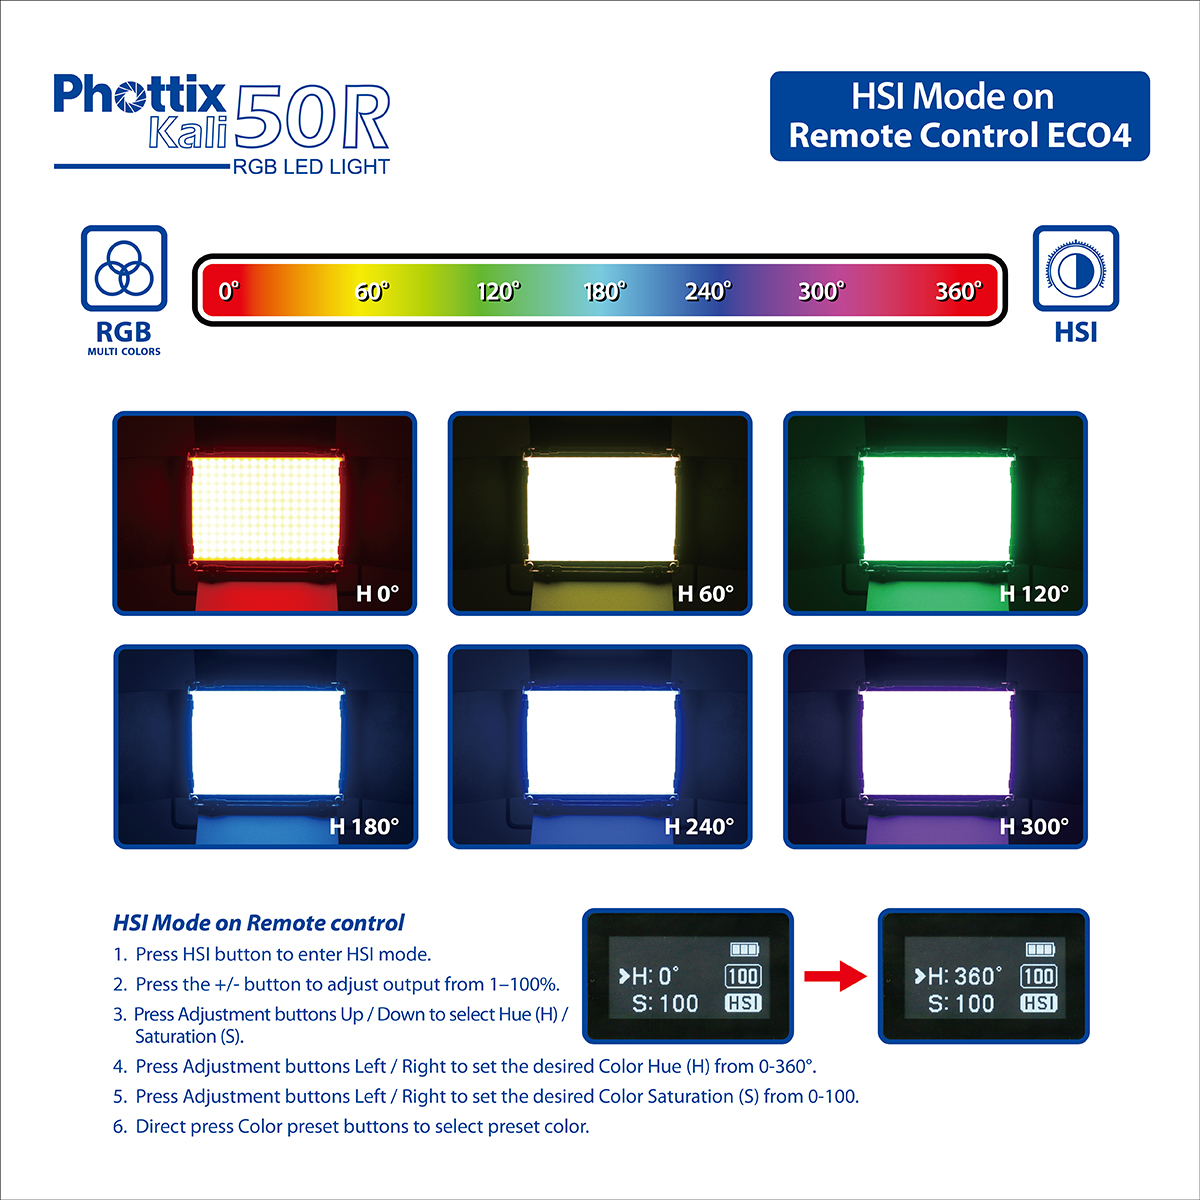 phottix-kali-50r-rgb-led-light-43.jpg